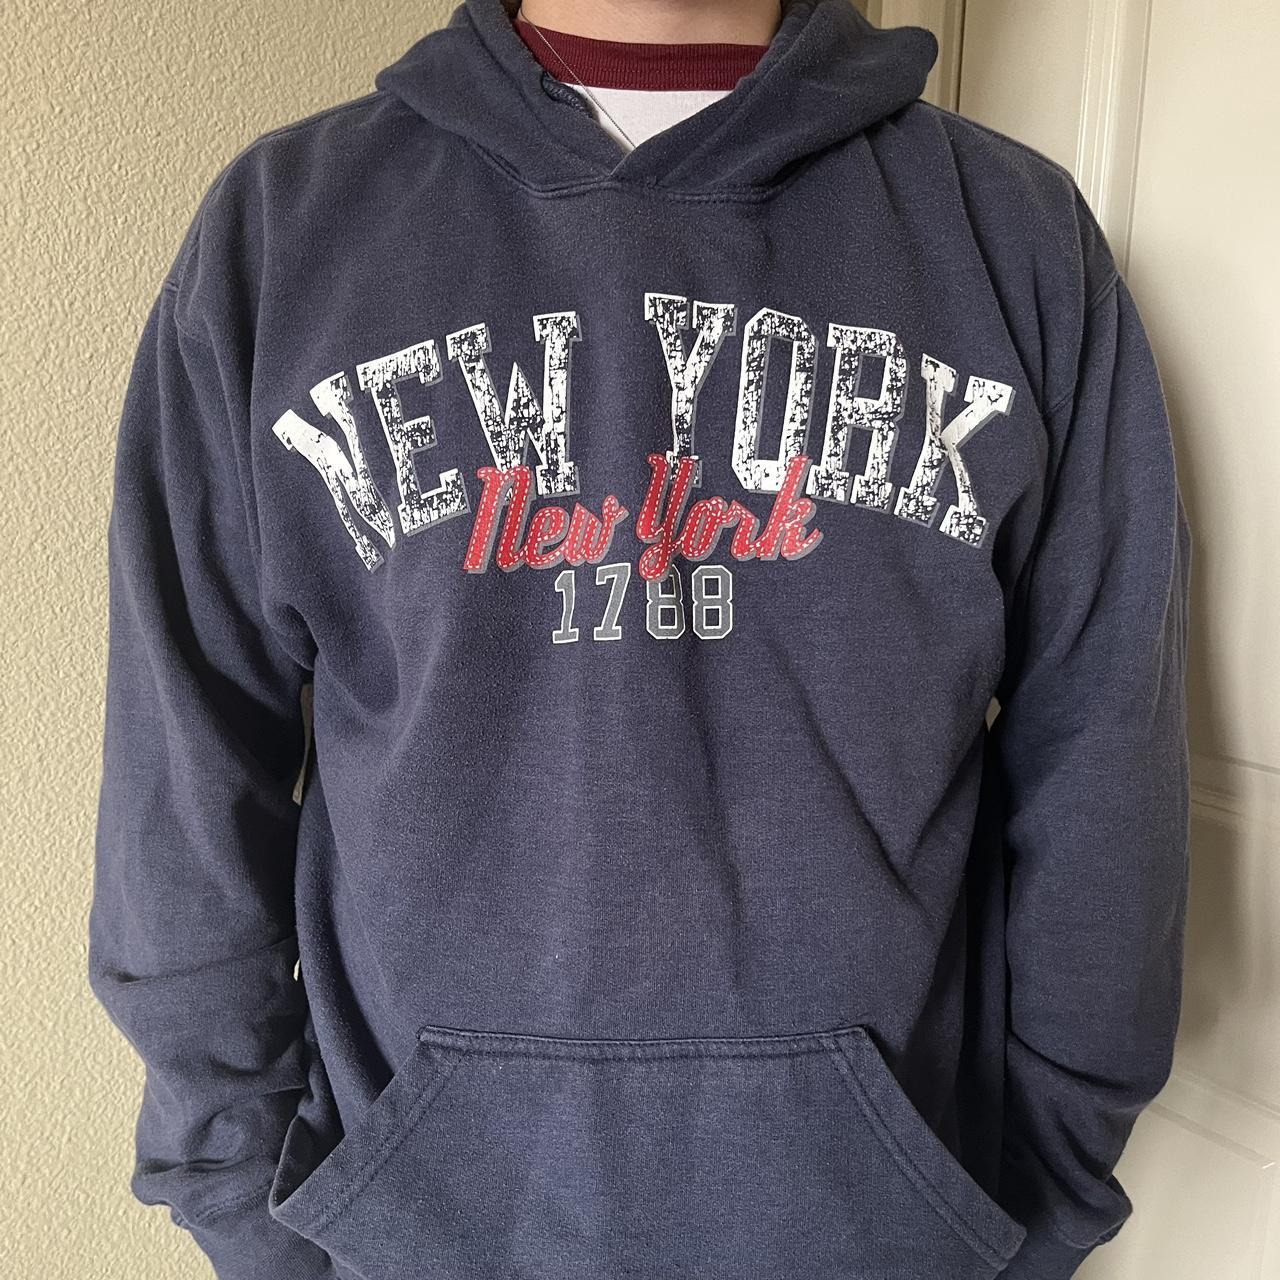 vintage new york hoodie